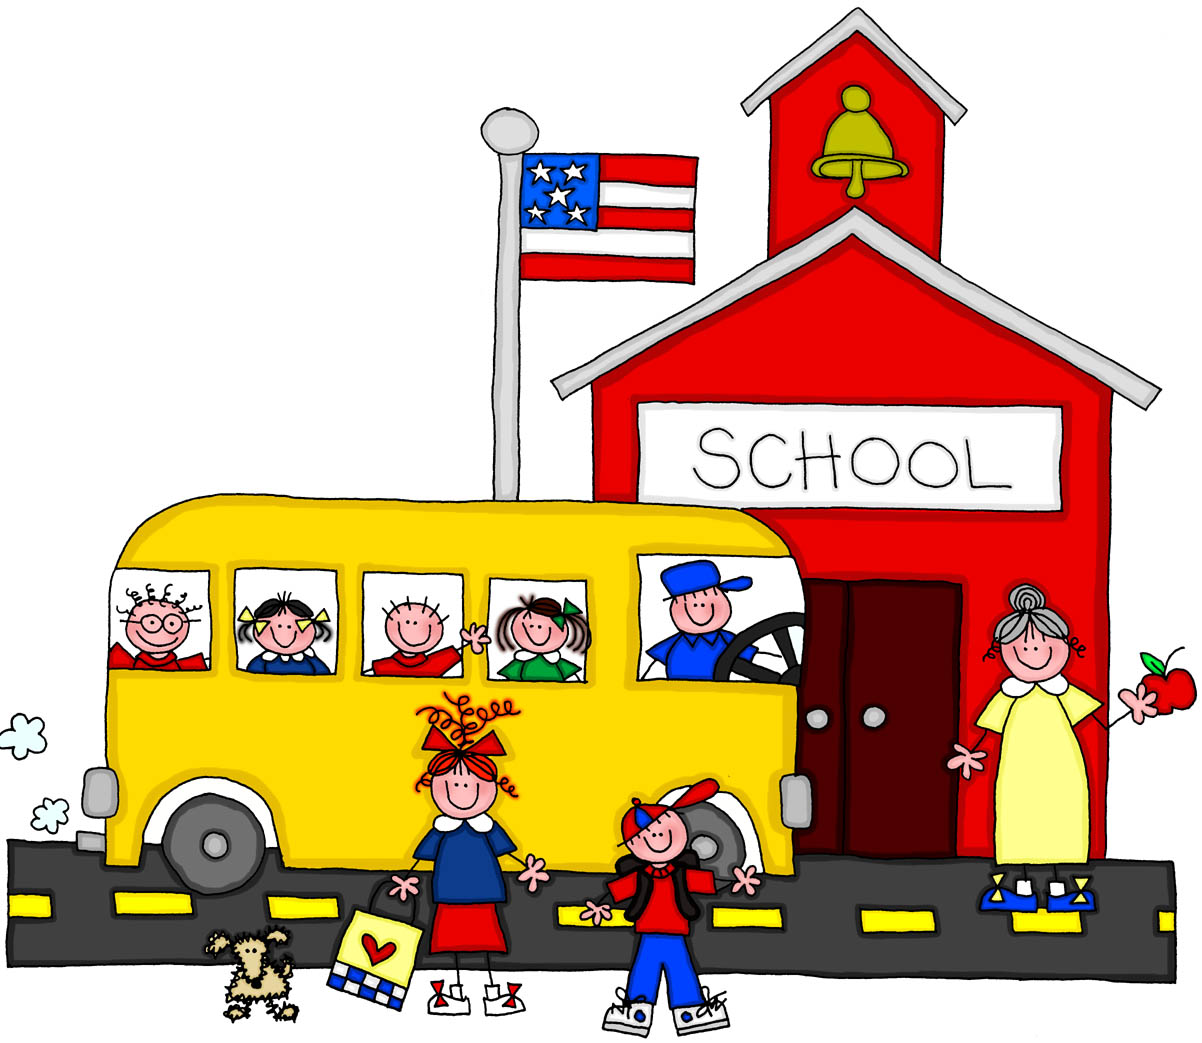 SchoolHouse - School House Clipart